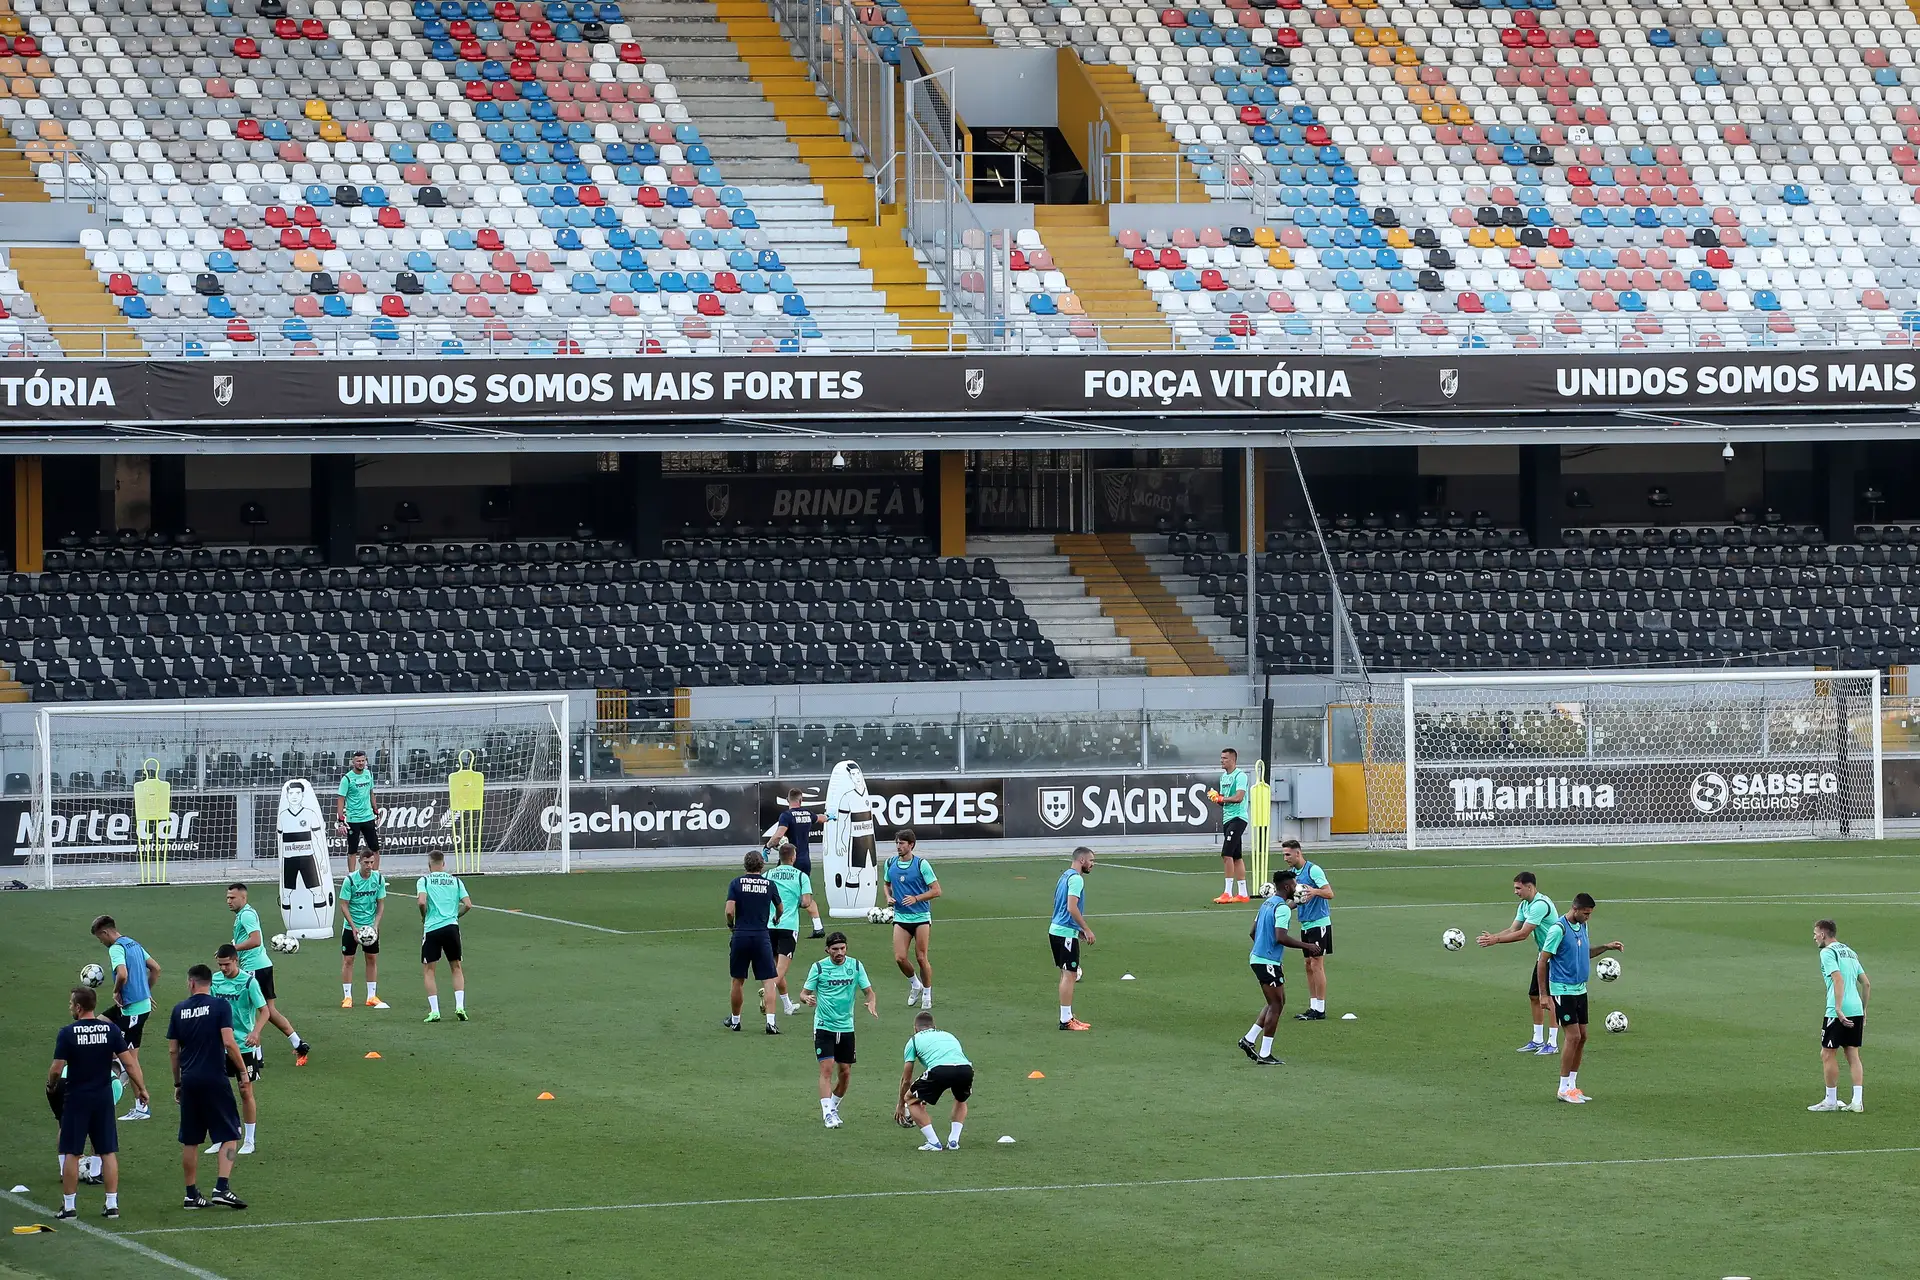 O Hajduk Split em treinos no estádio de Guimarães